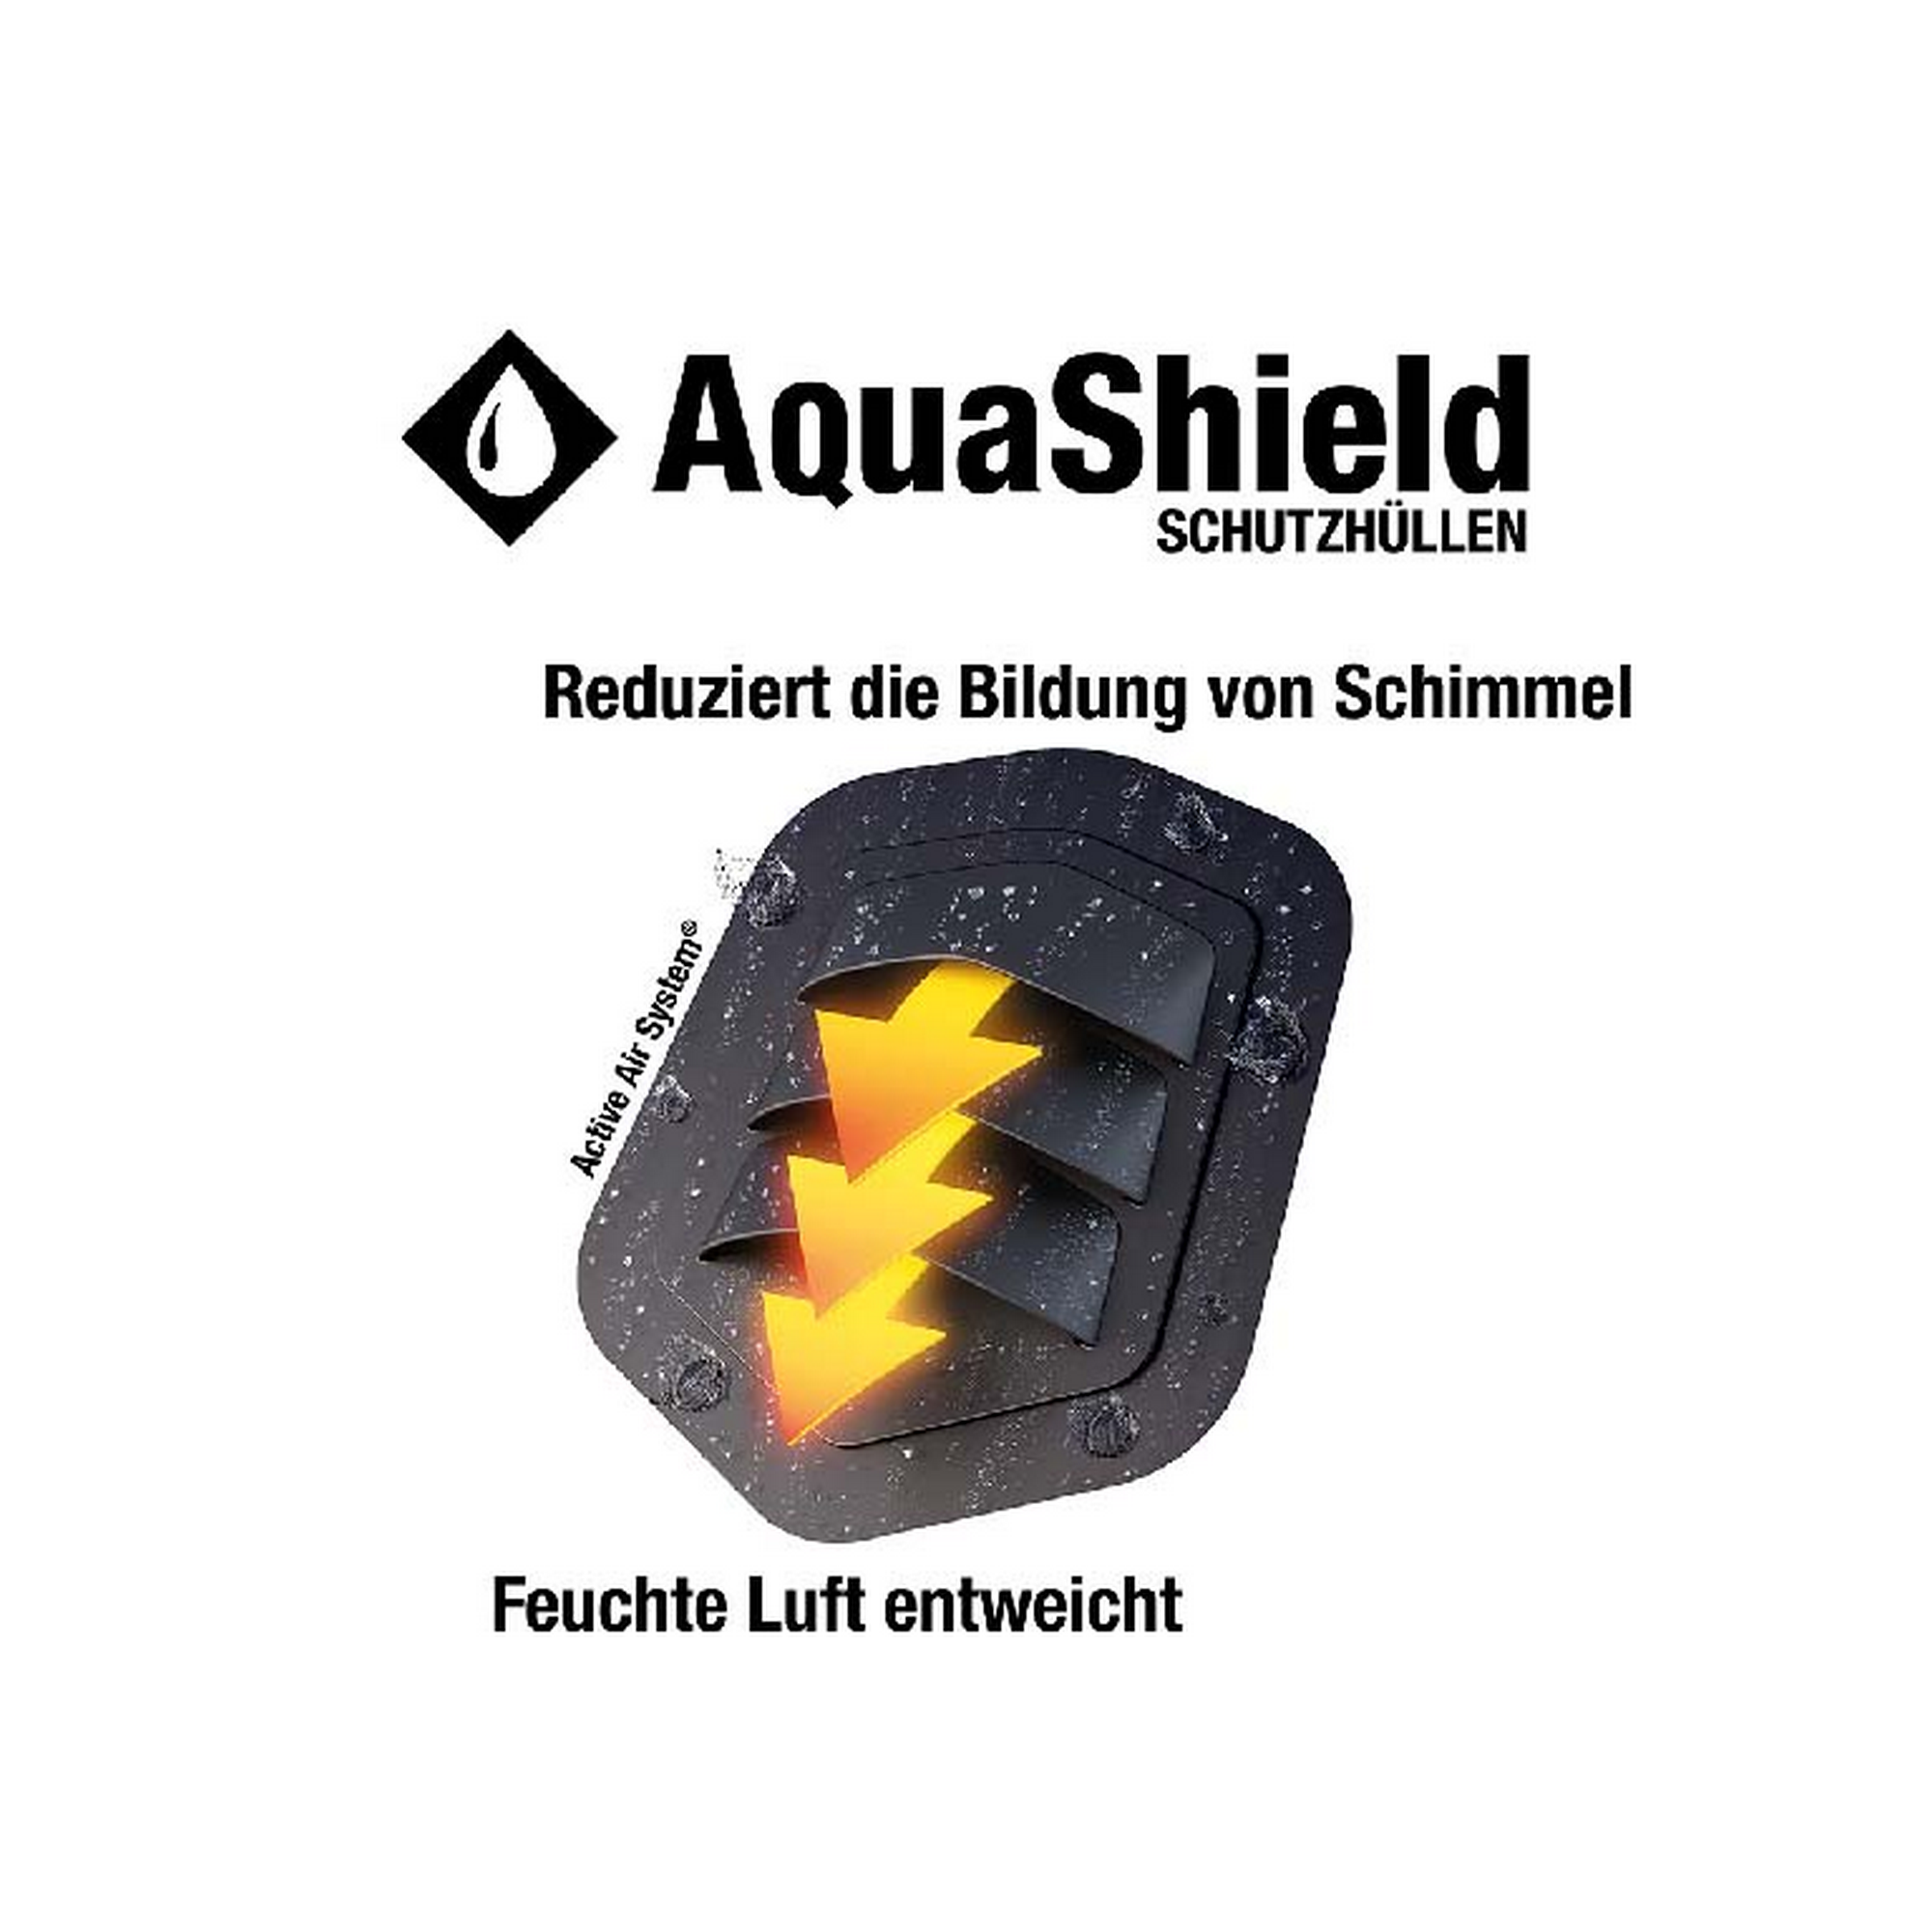 Bankhülle 'AquaShield' für 3-Sitzer 160 x 75 x 65 cm + product picture